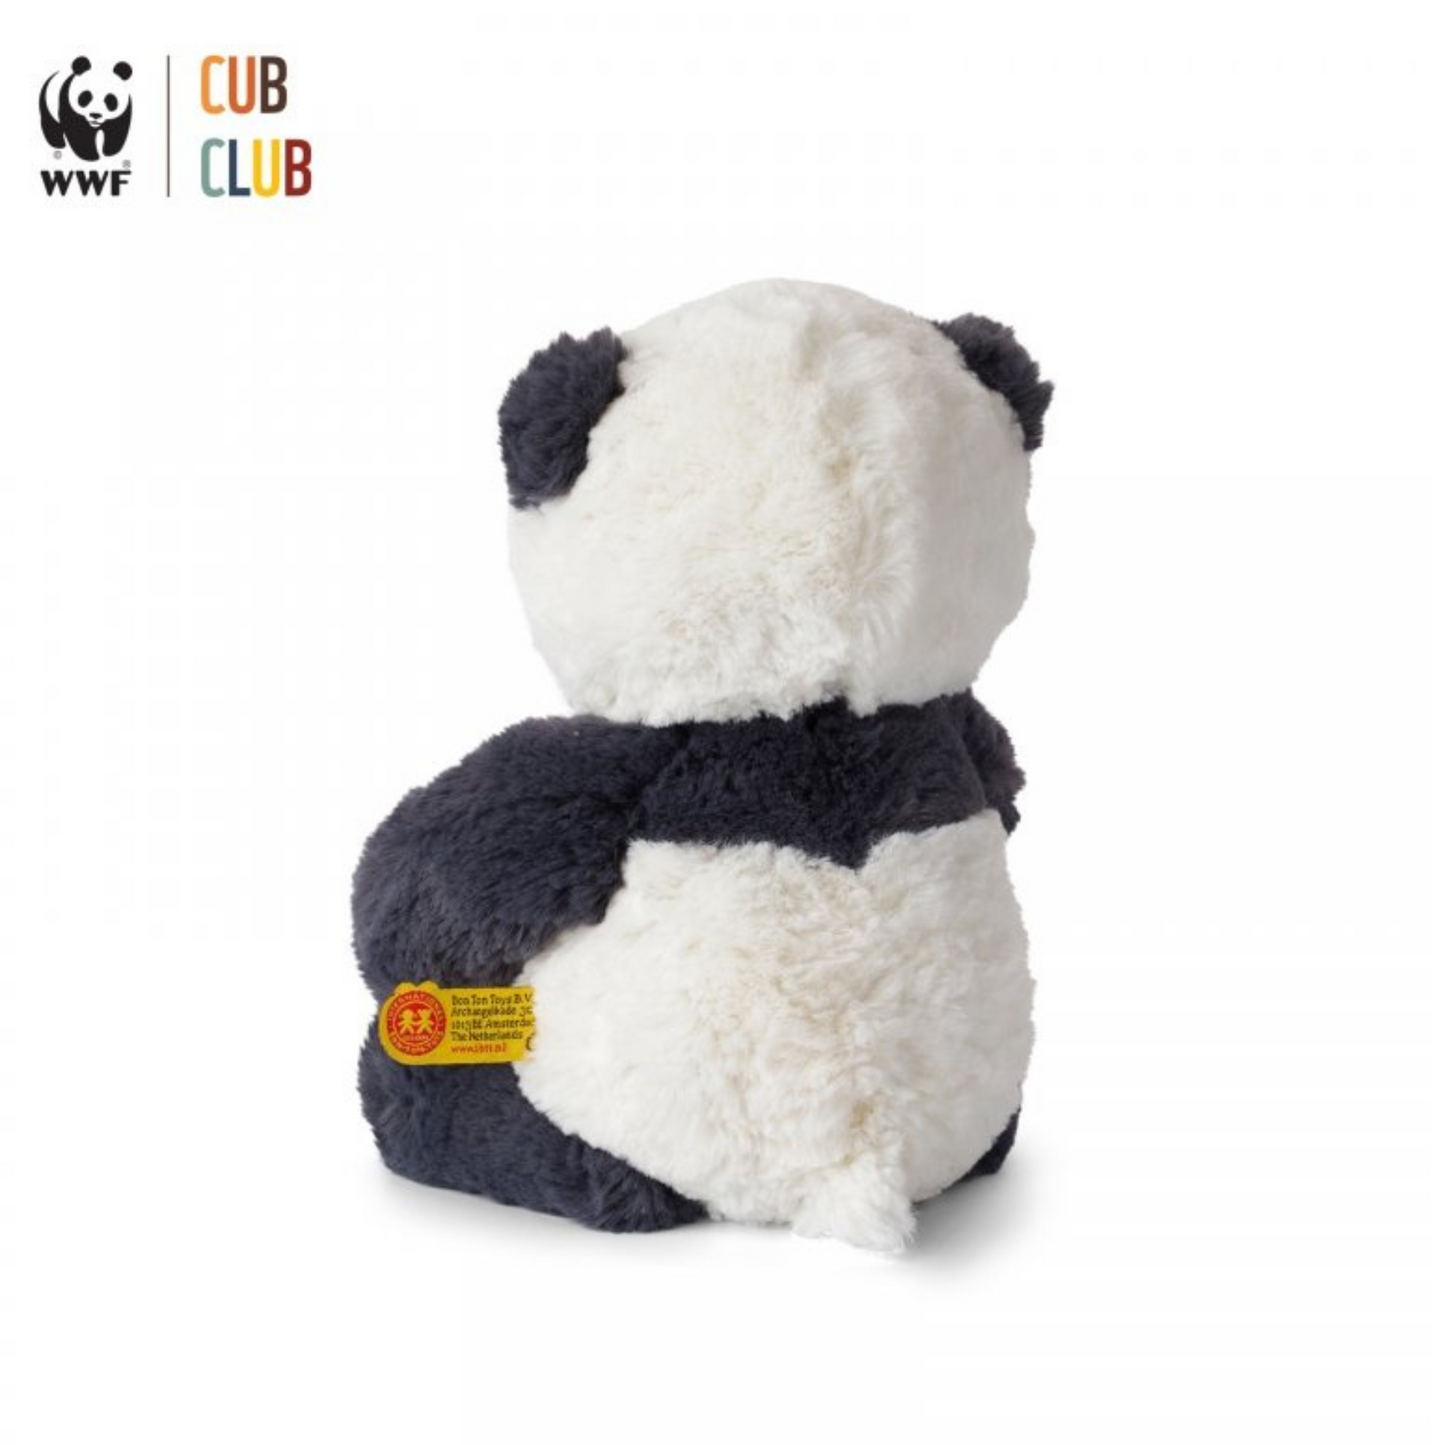 Personalized WWF Panu Panda Plush(11.5")